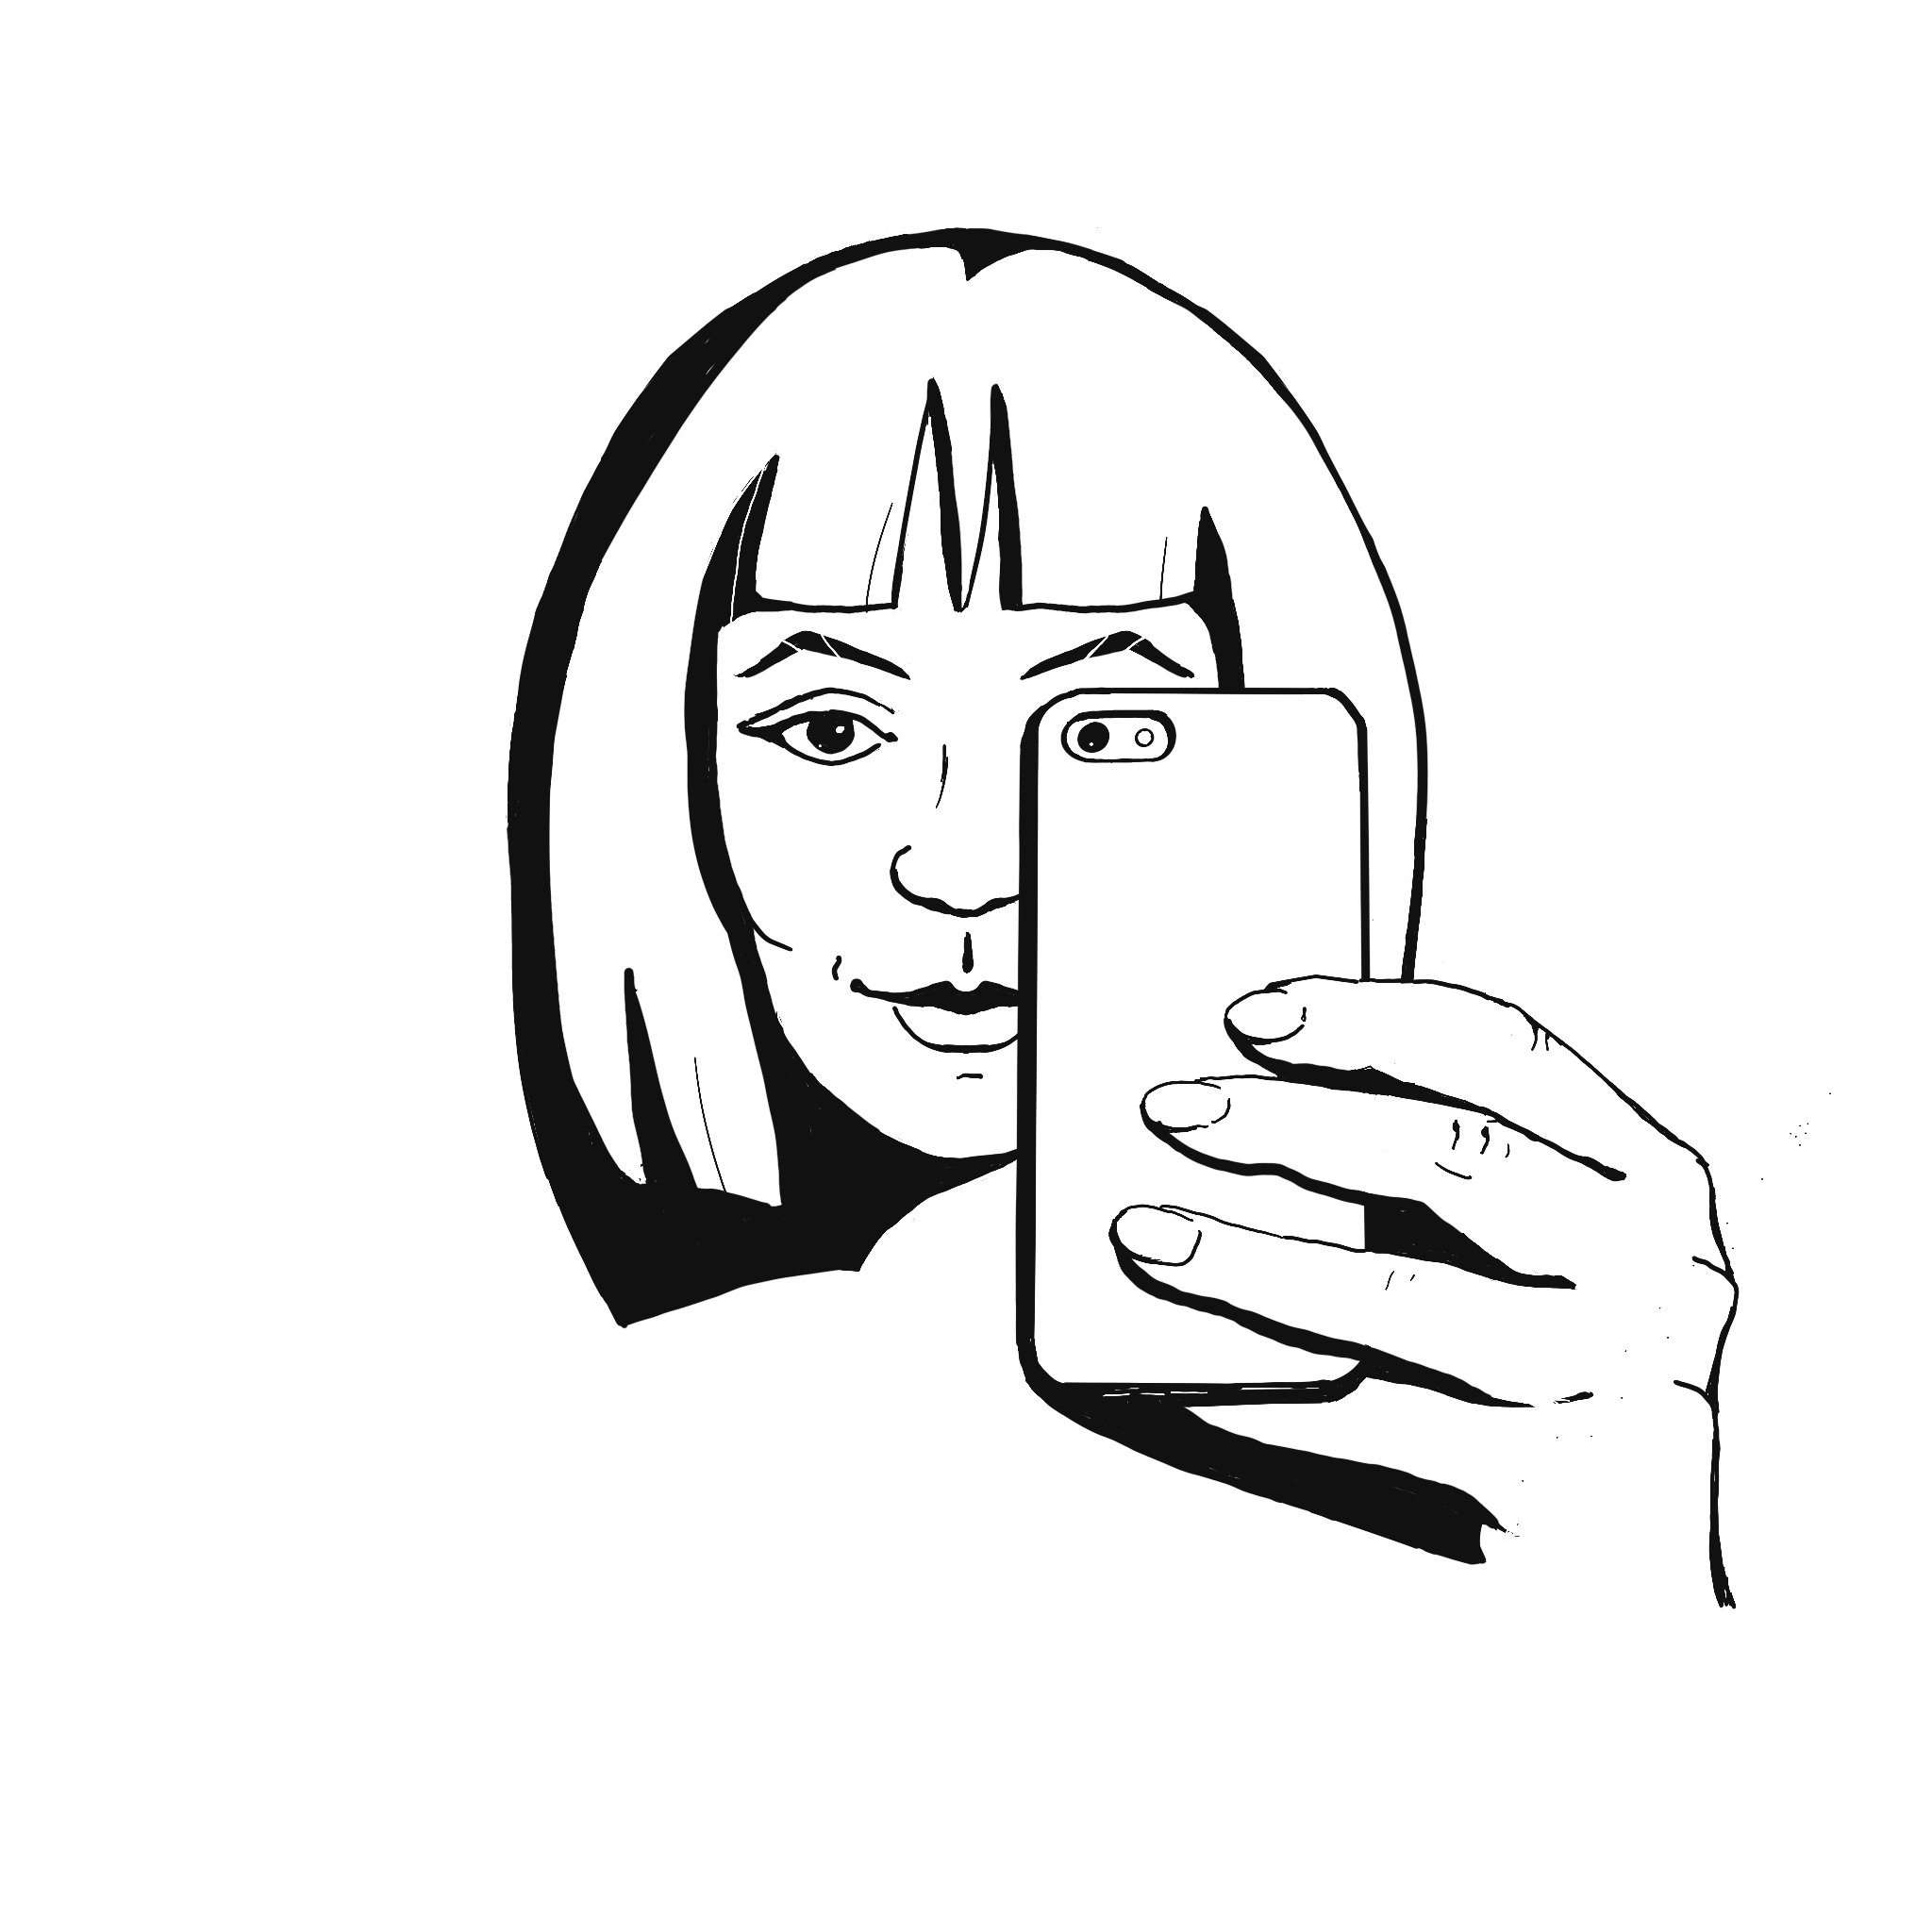 Ilustración digital que representa un autorretrato usando teléfono móvil.